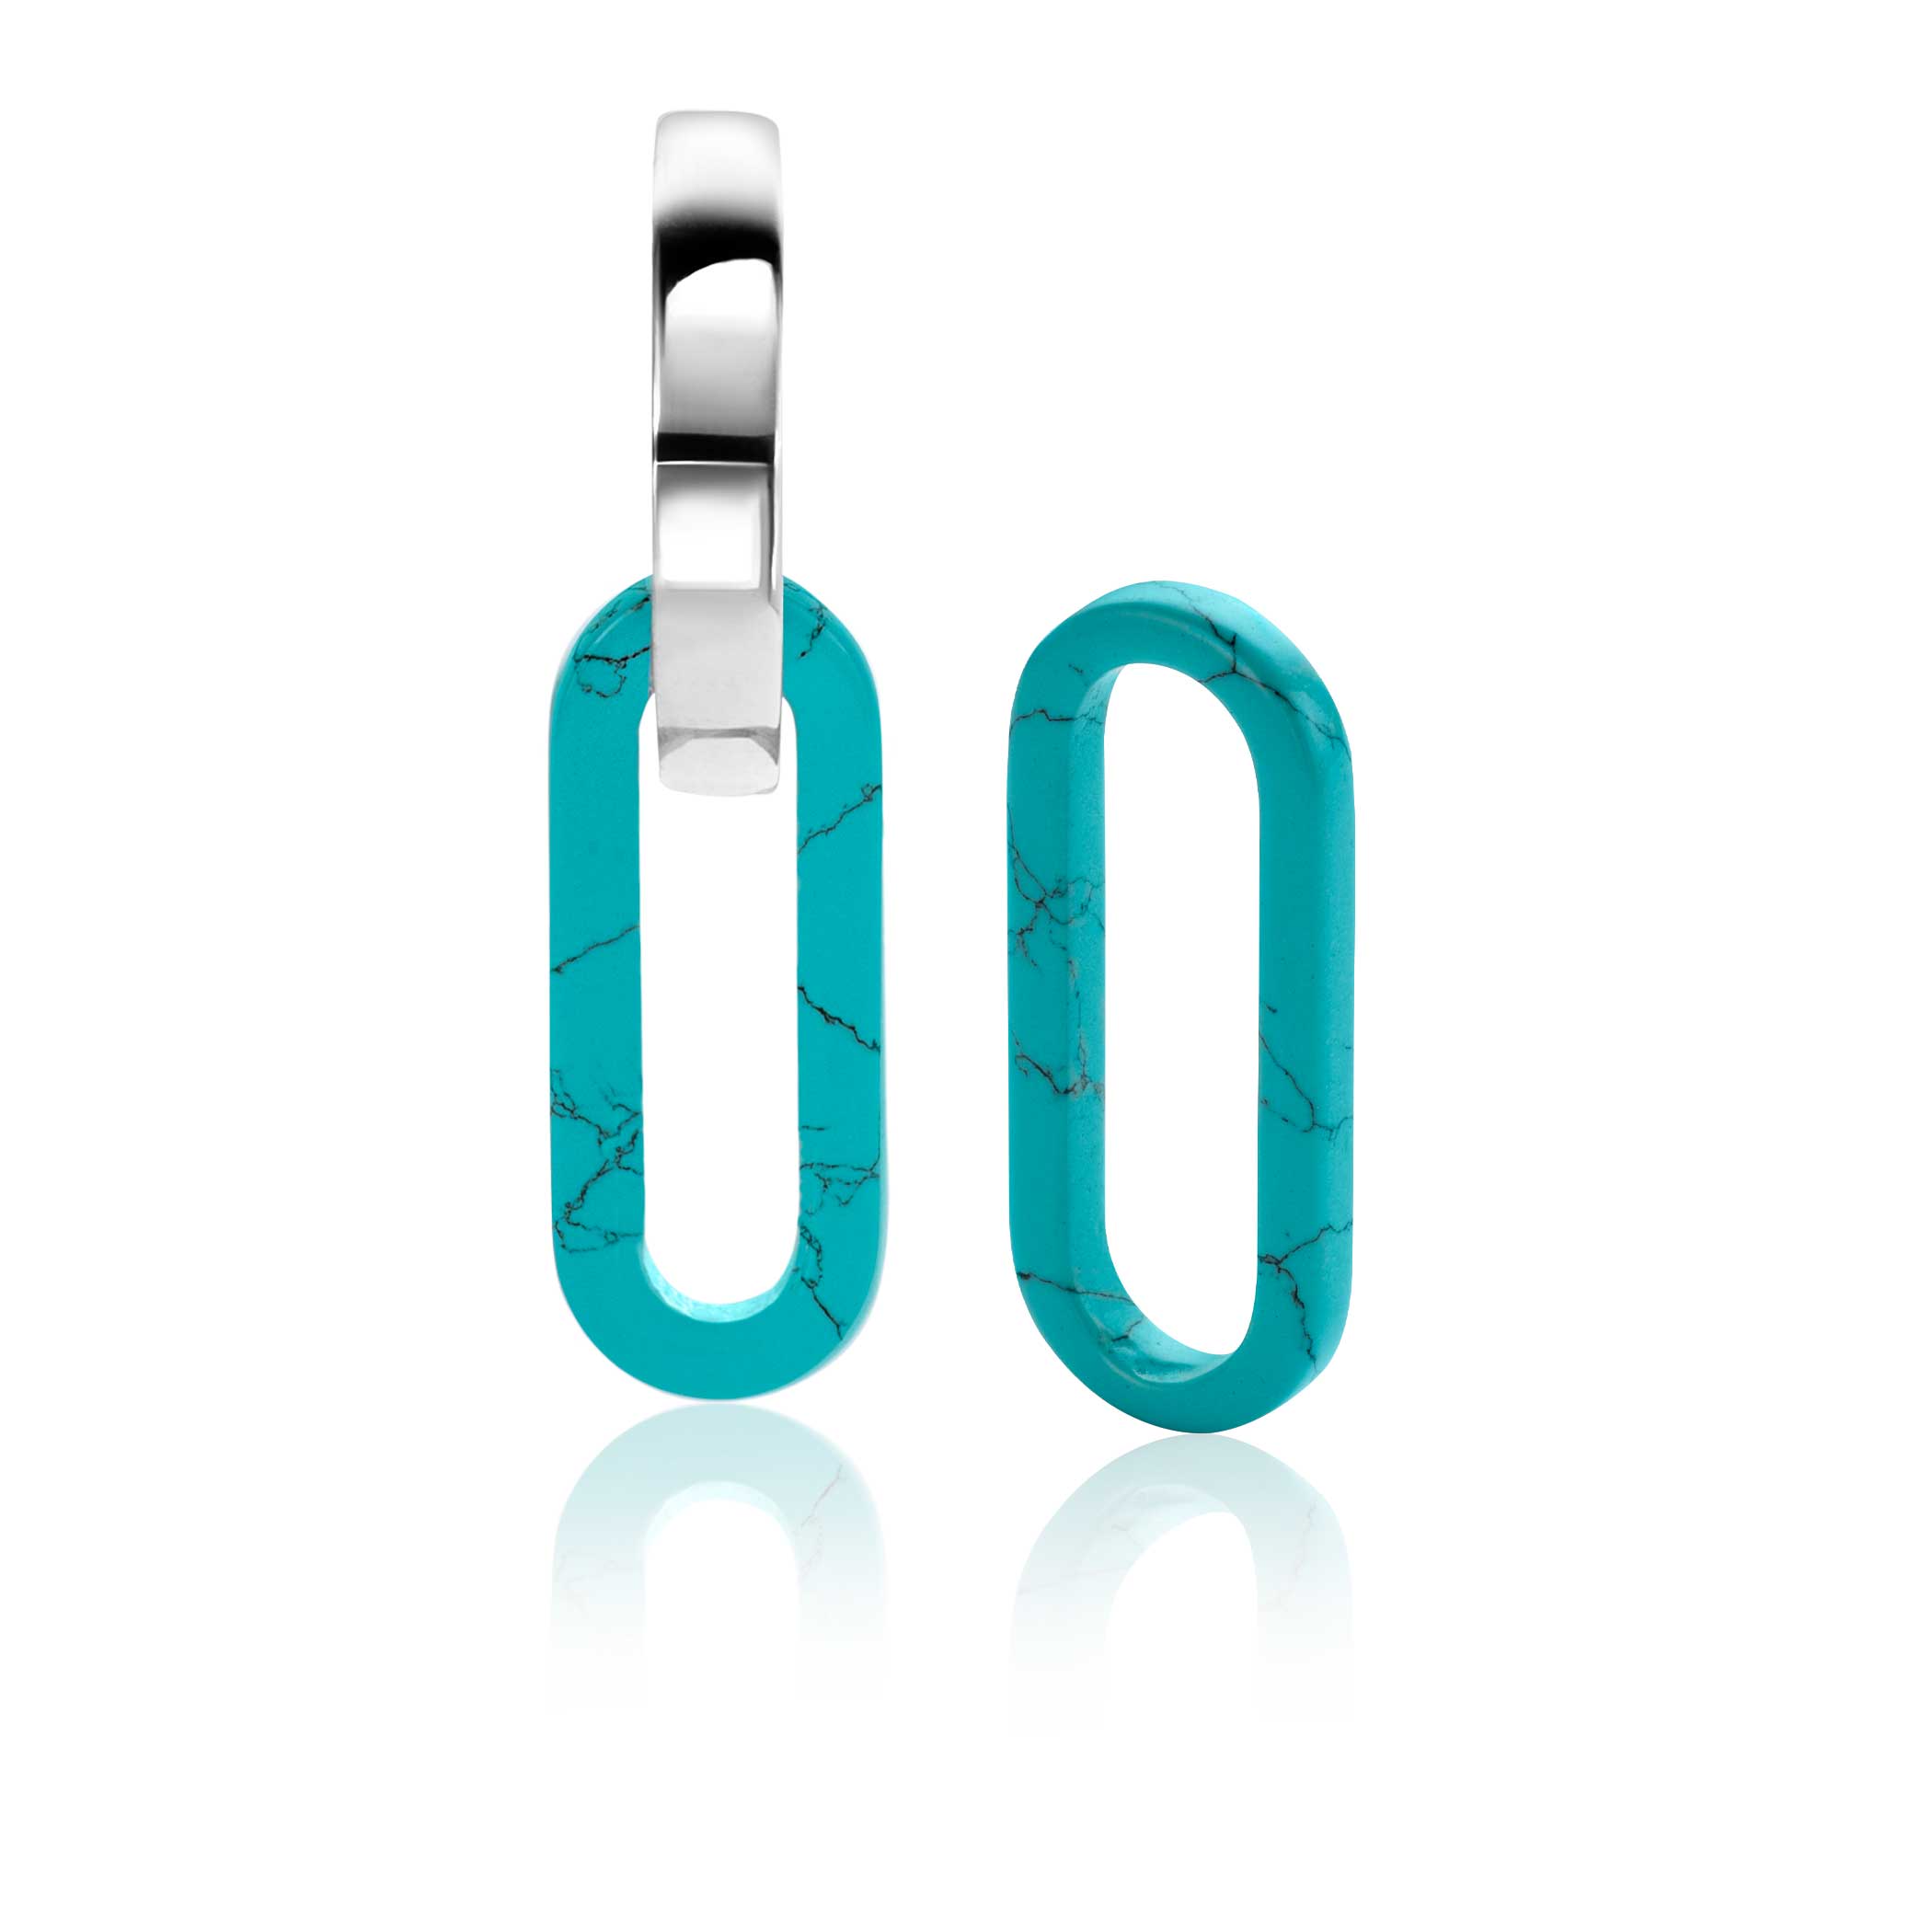 19mm ZINZI Oval Earrings Pendants in Trendy Turquoise Blue ZICH2455T (excl. hoop earrings)